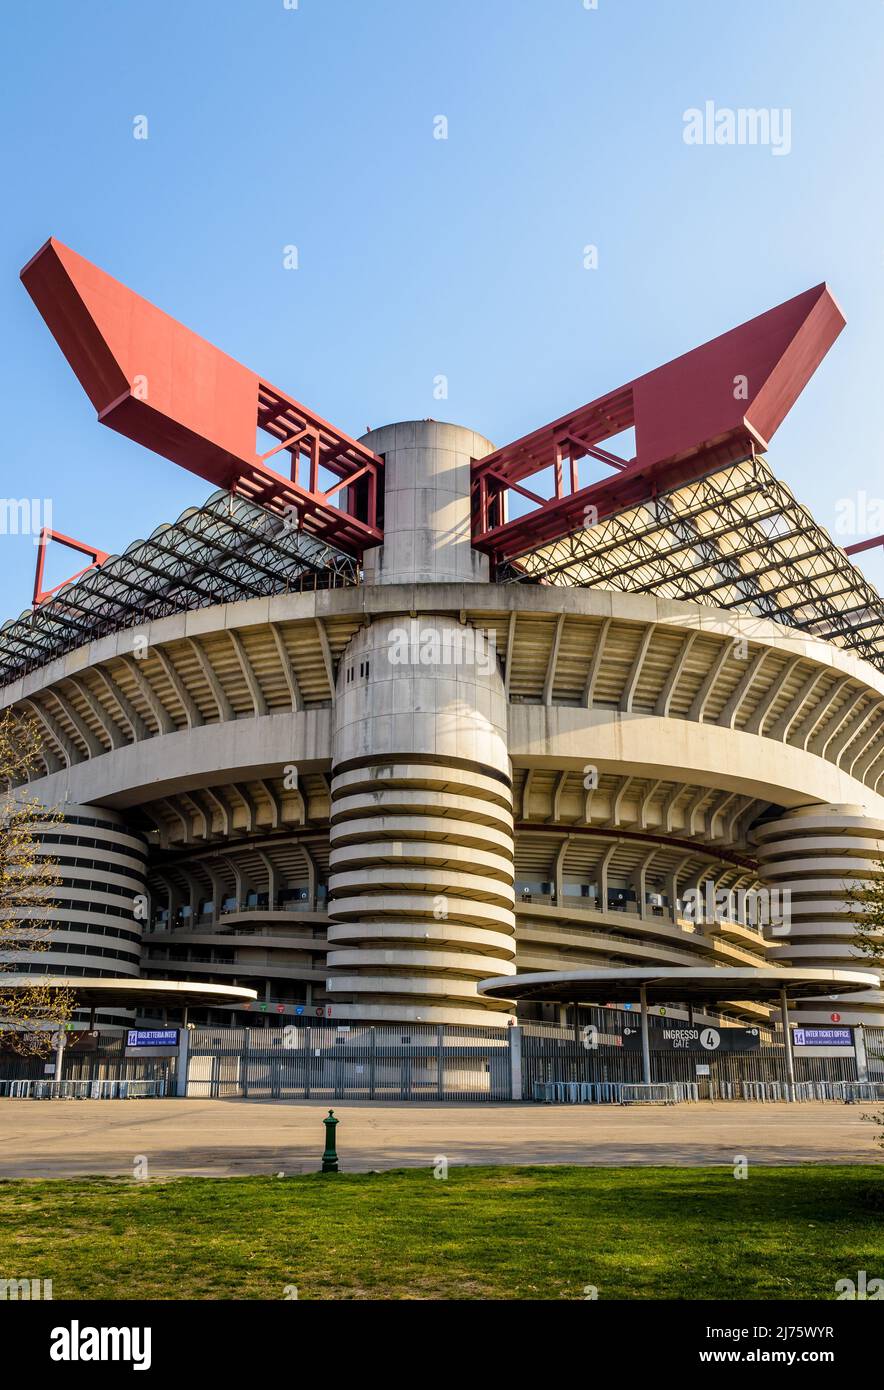 Vue à angle bas de la structure du stade de football San Siro, stade de l'Inter Milan et des clubs de football AC Milan à Milan, Italie. Banque D'Images